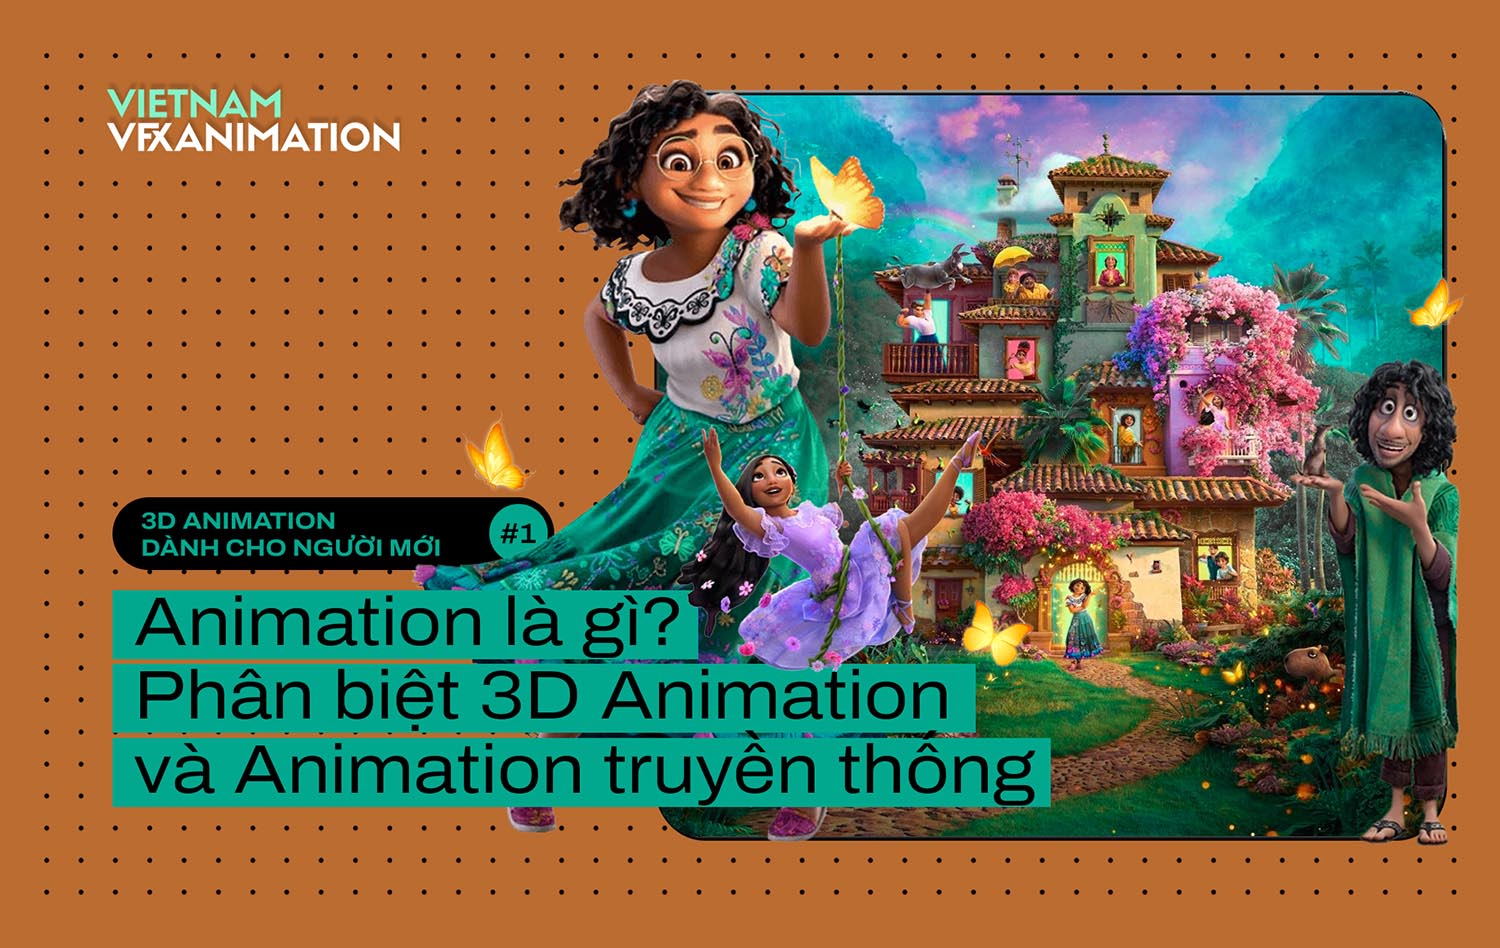 Animation là gì? Phân biệt 3D Animation và Animation truyền thống